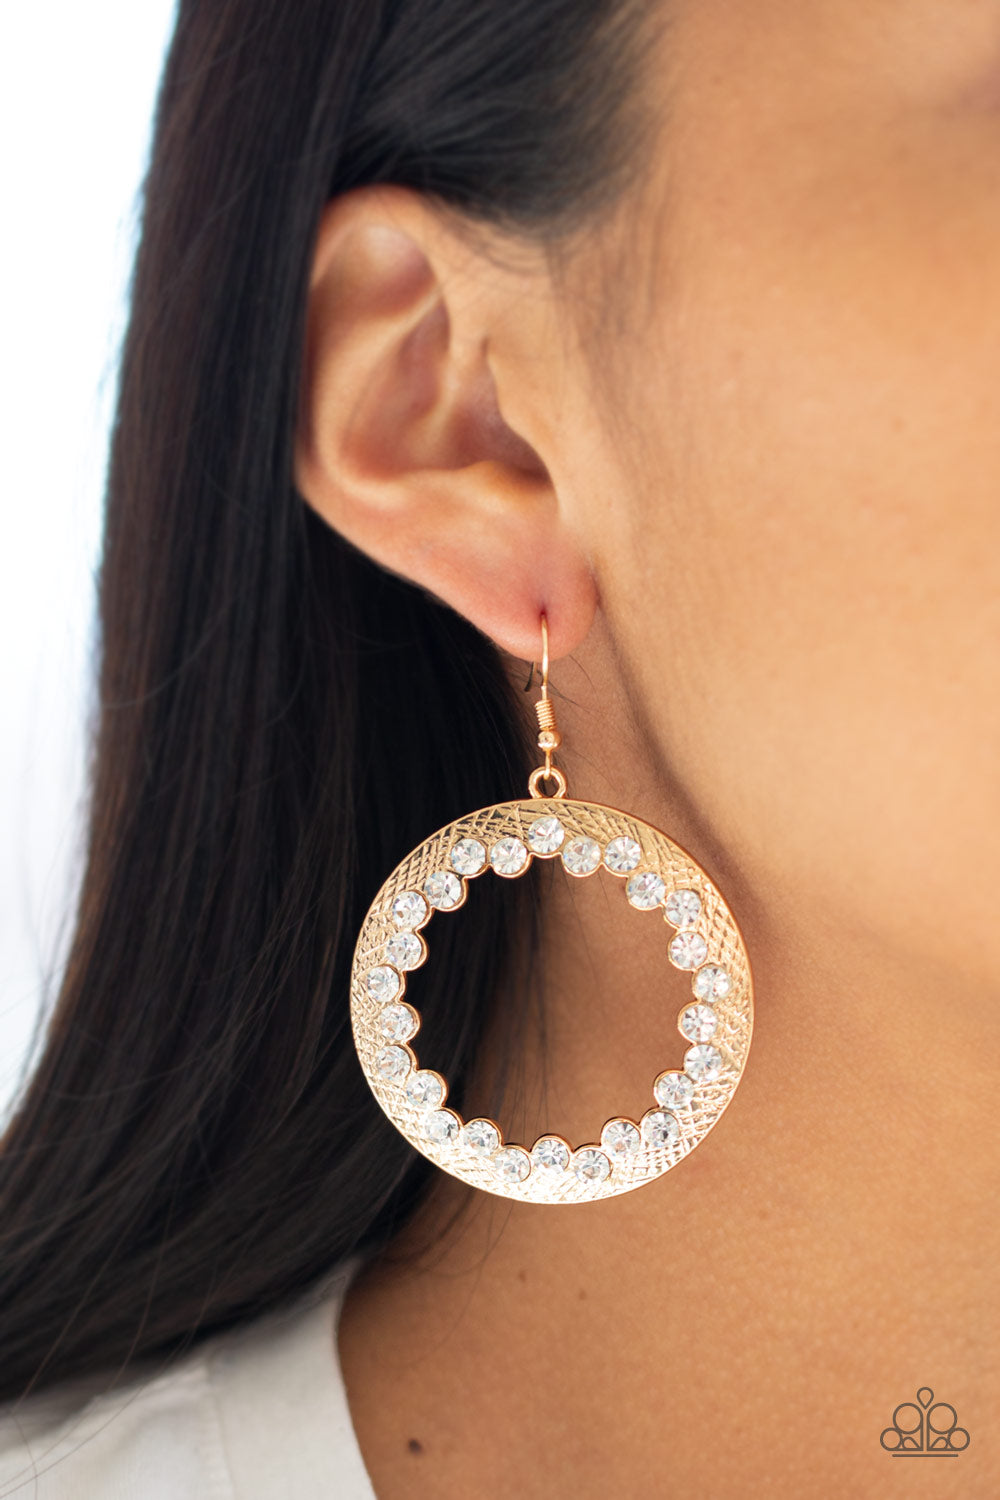 Gala Glitter Gold
Earrings - Daria's Blings N Things